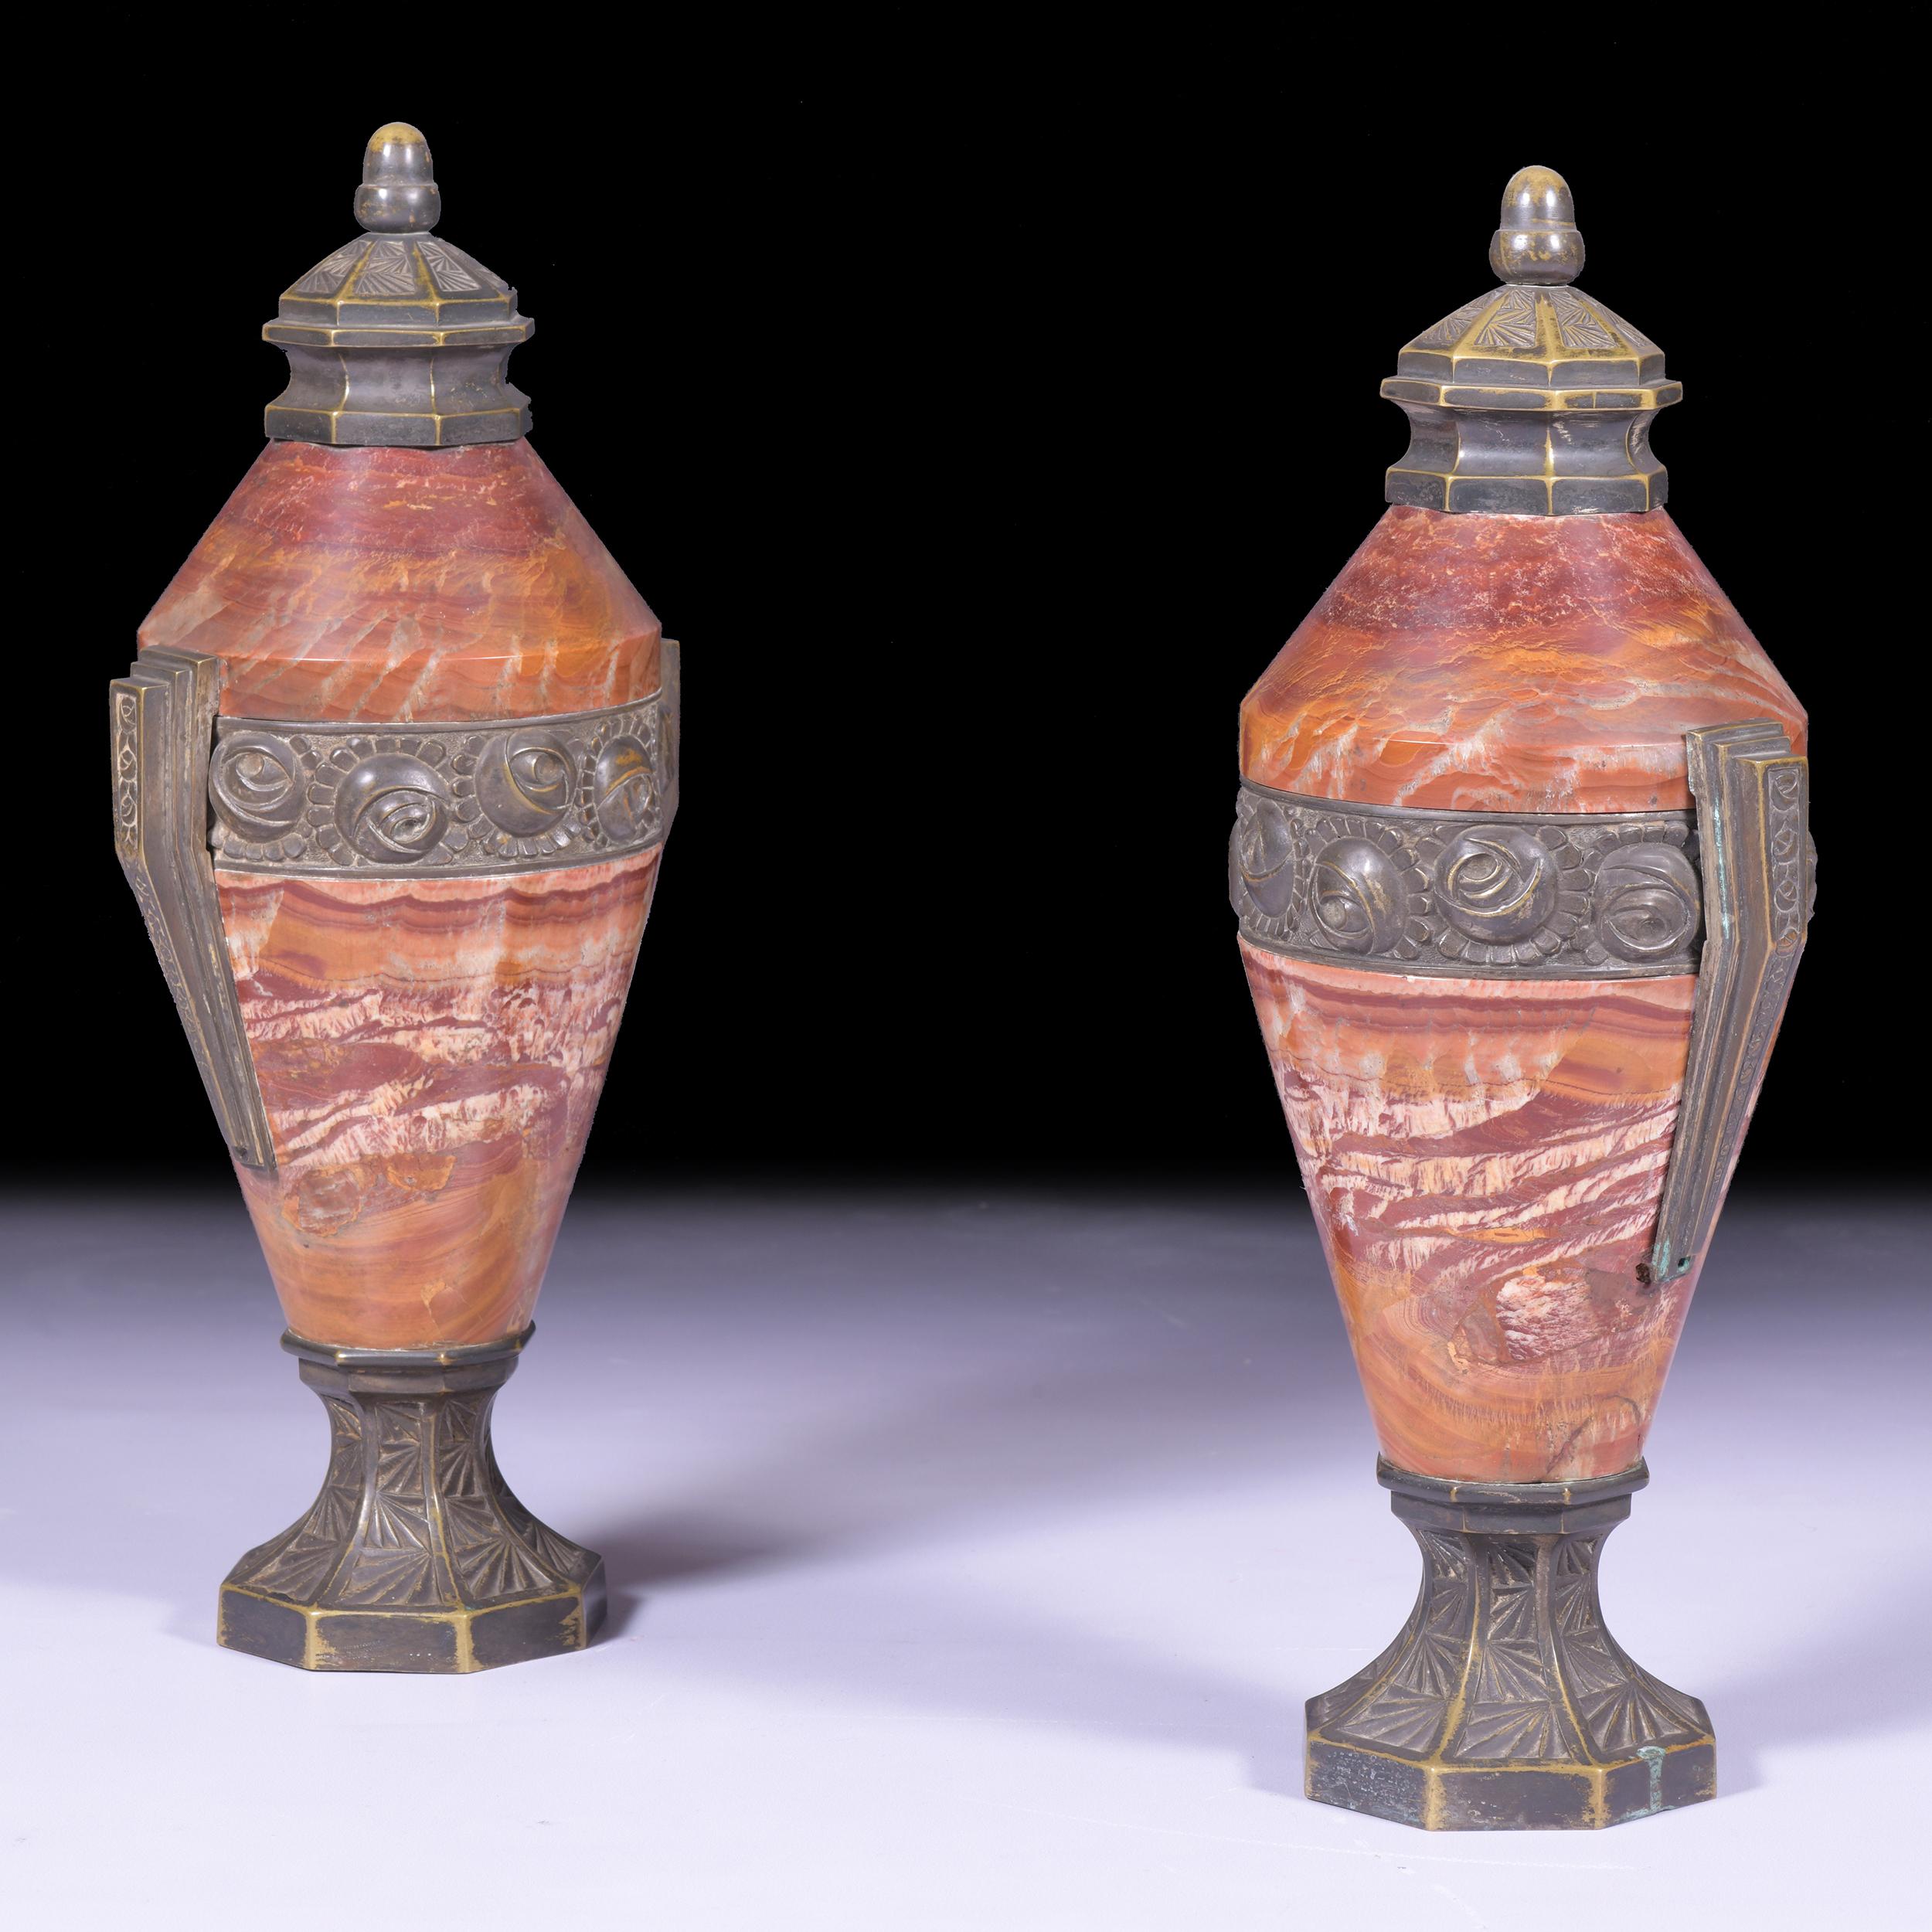 Ein sehr hochwertiges Paar Art-Déco-Urnen aus Marmor und Bronze

Um 1930

Französisch

In Dublin 8 ansässig